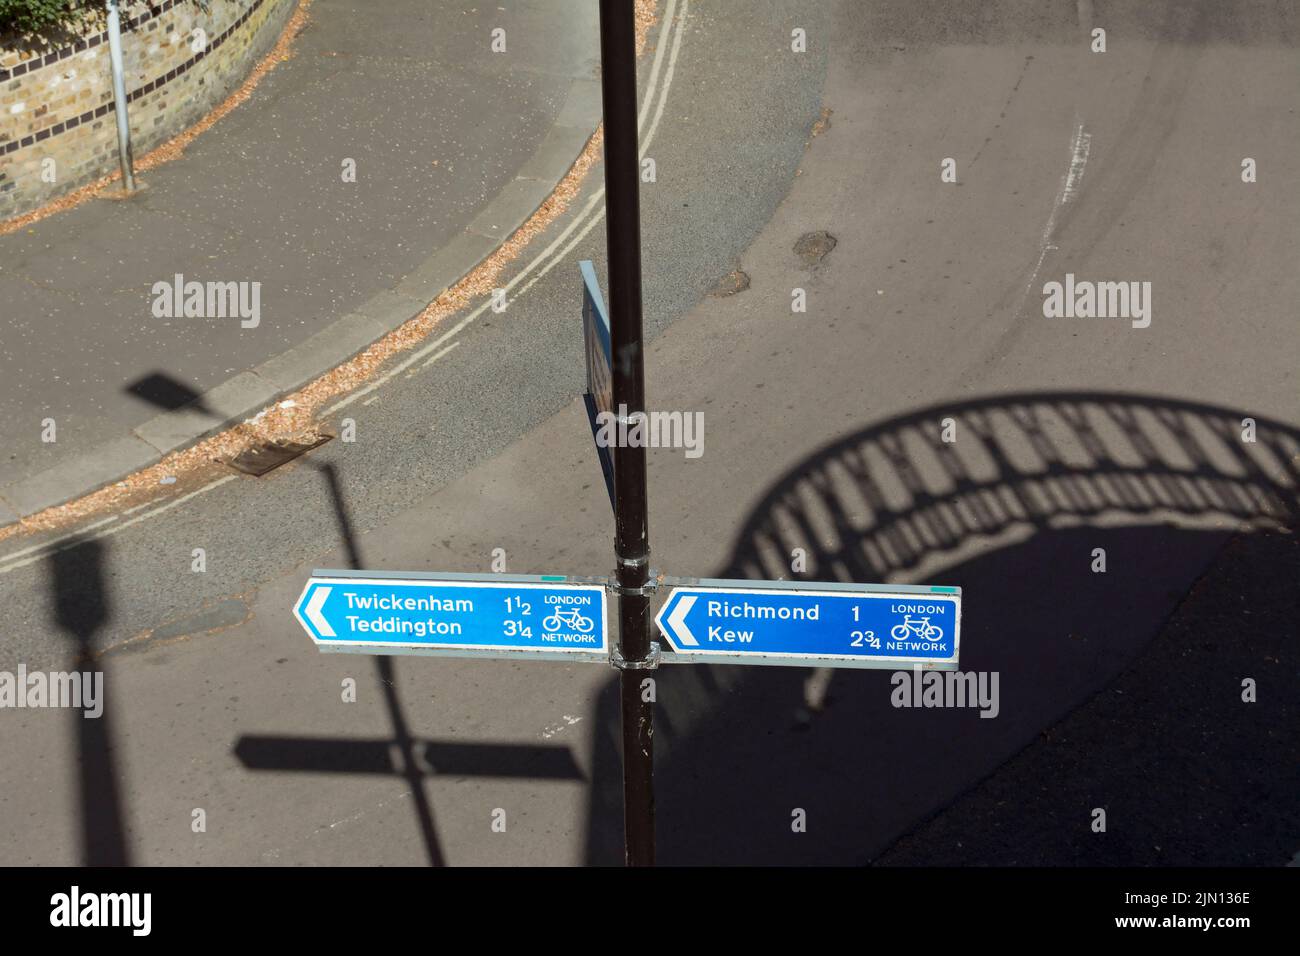 con l'ombra del ponte di twickenham sullo sfondo, seguire le indicazioni per twickenham, teddington, richmond e kew, londra, inghilterra Foto Stock